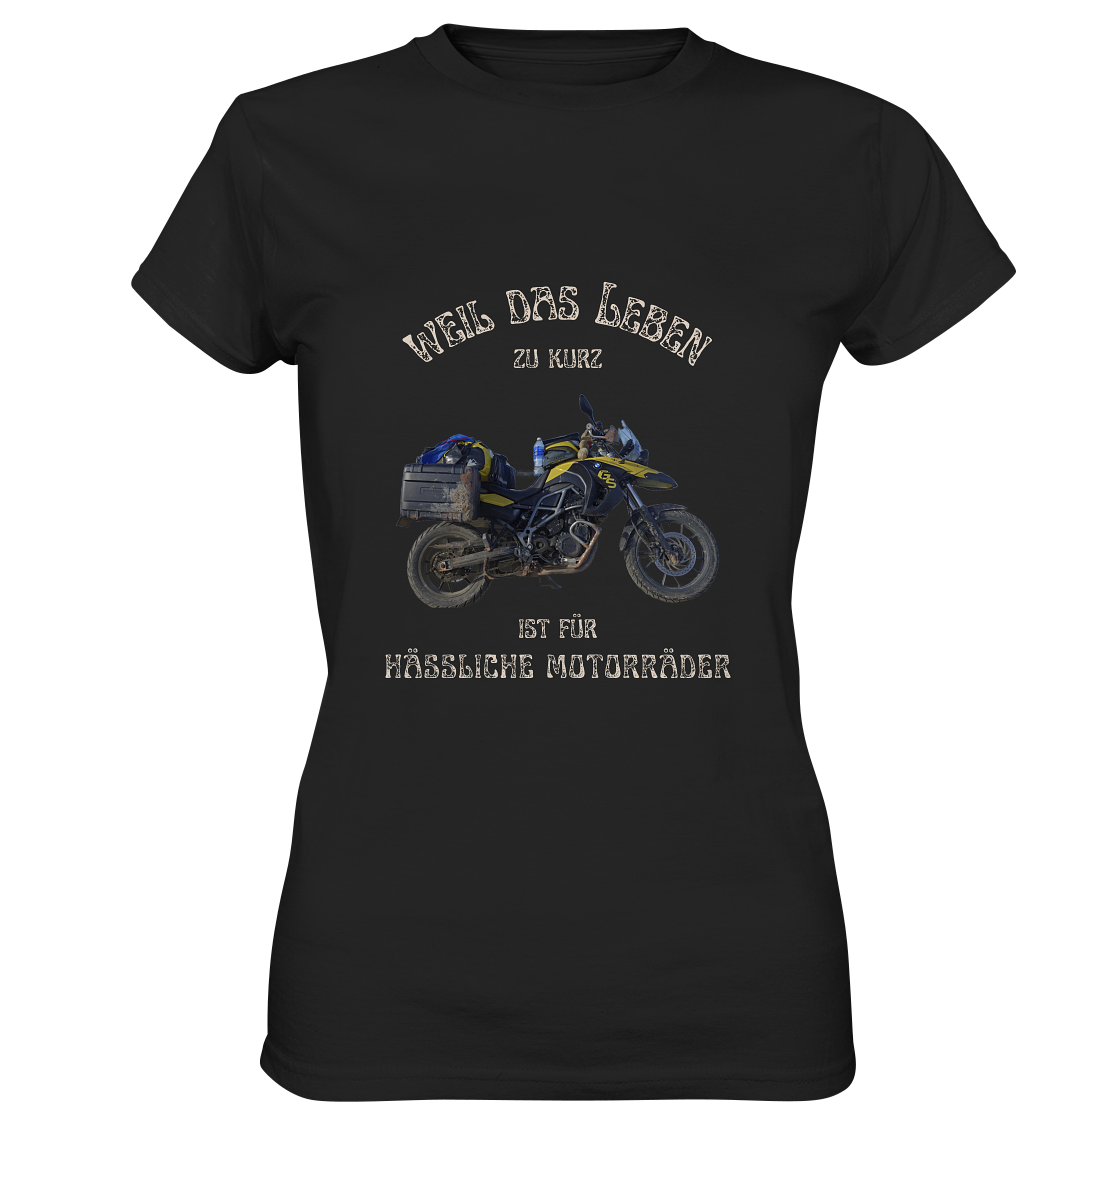 "Weil das Leben zu kurz ist für hässliche Motorräder" | individualisierbares Damen-Shirt mit Foto deines Motorrads & Spruch in hellem Design